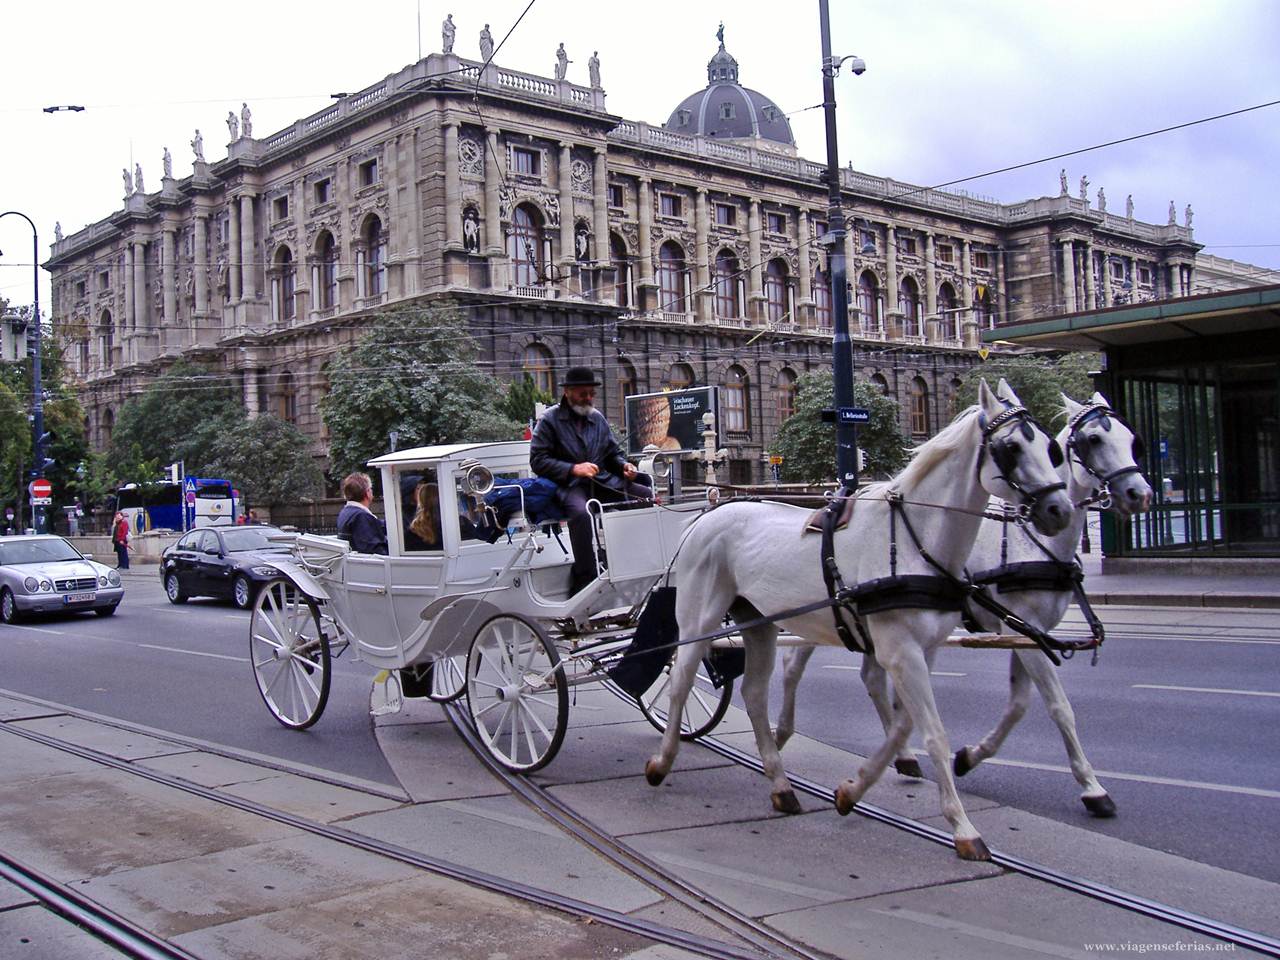 Típica carruagem com cavalos numa rua de Viena